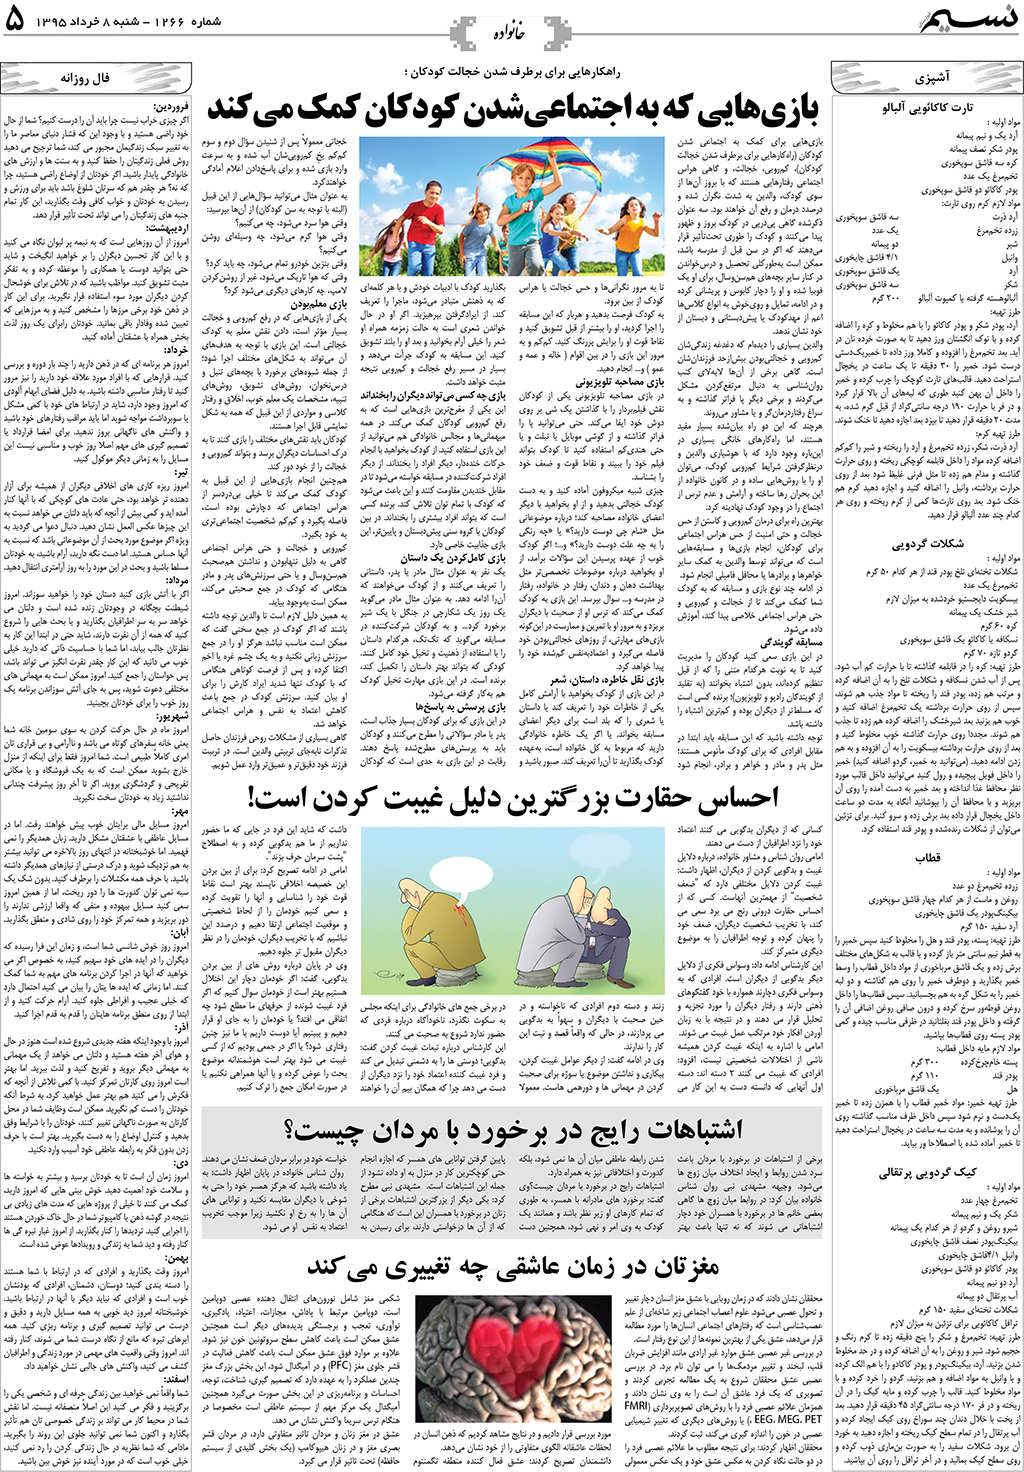 صفحه خانواده روزنامه نسیم شماره 1266